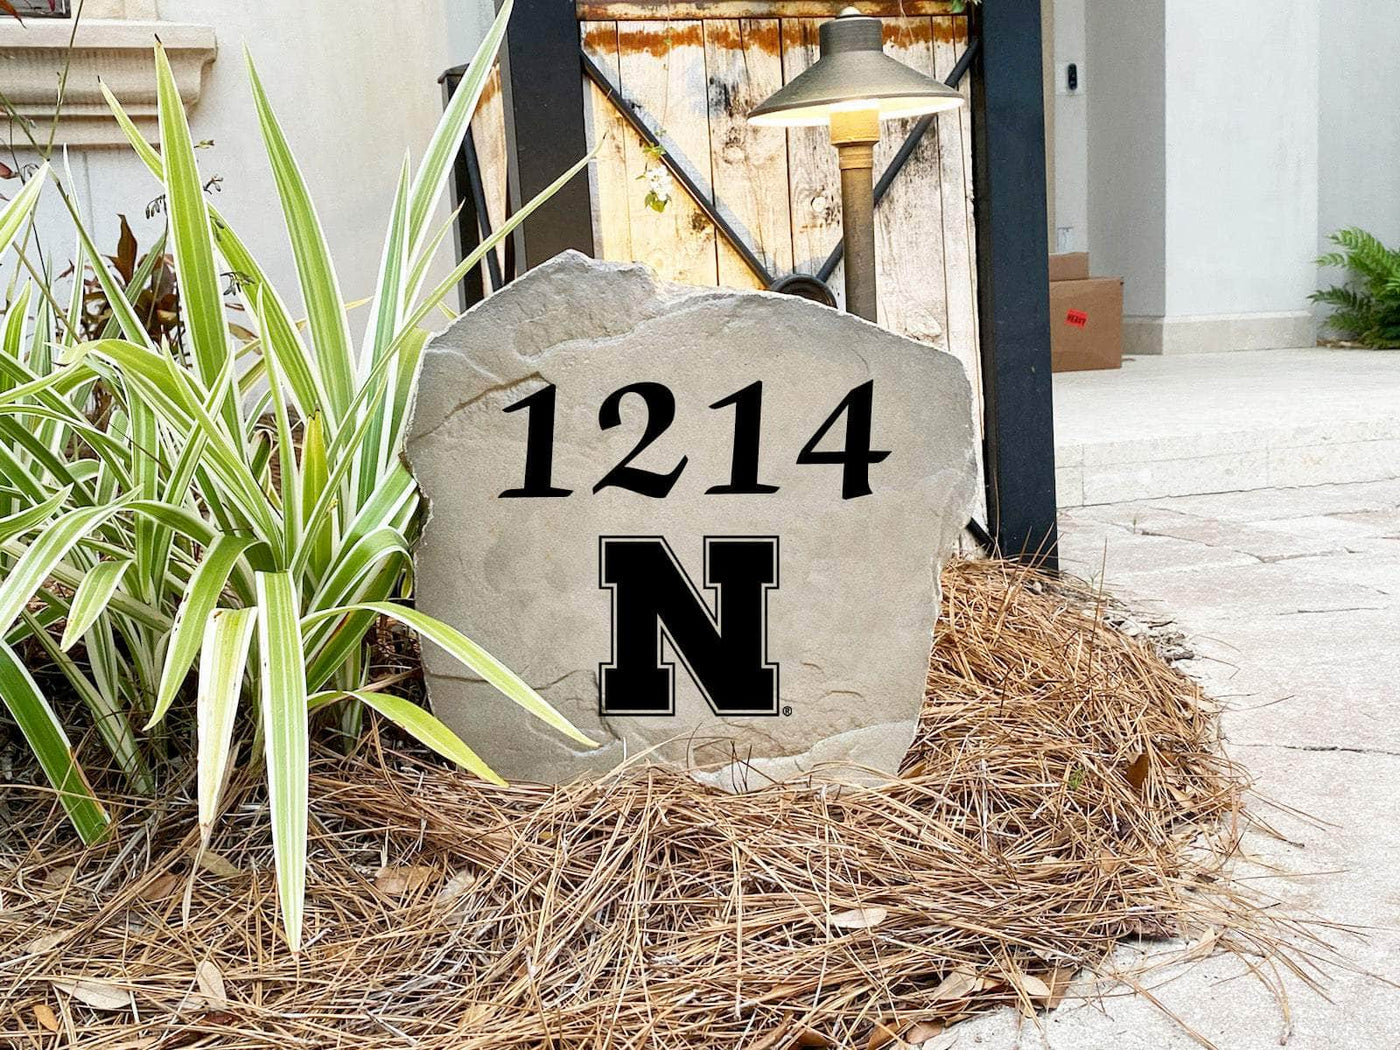 University of Nebraska Address Stone